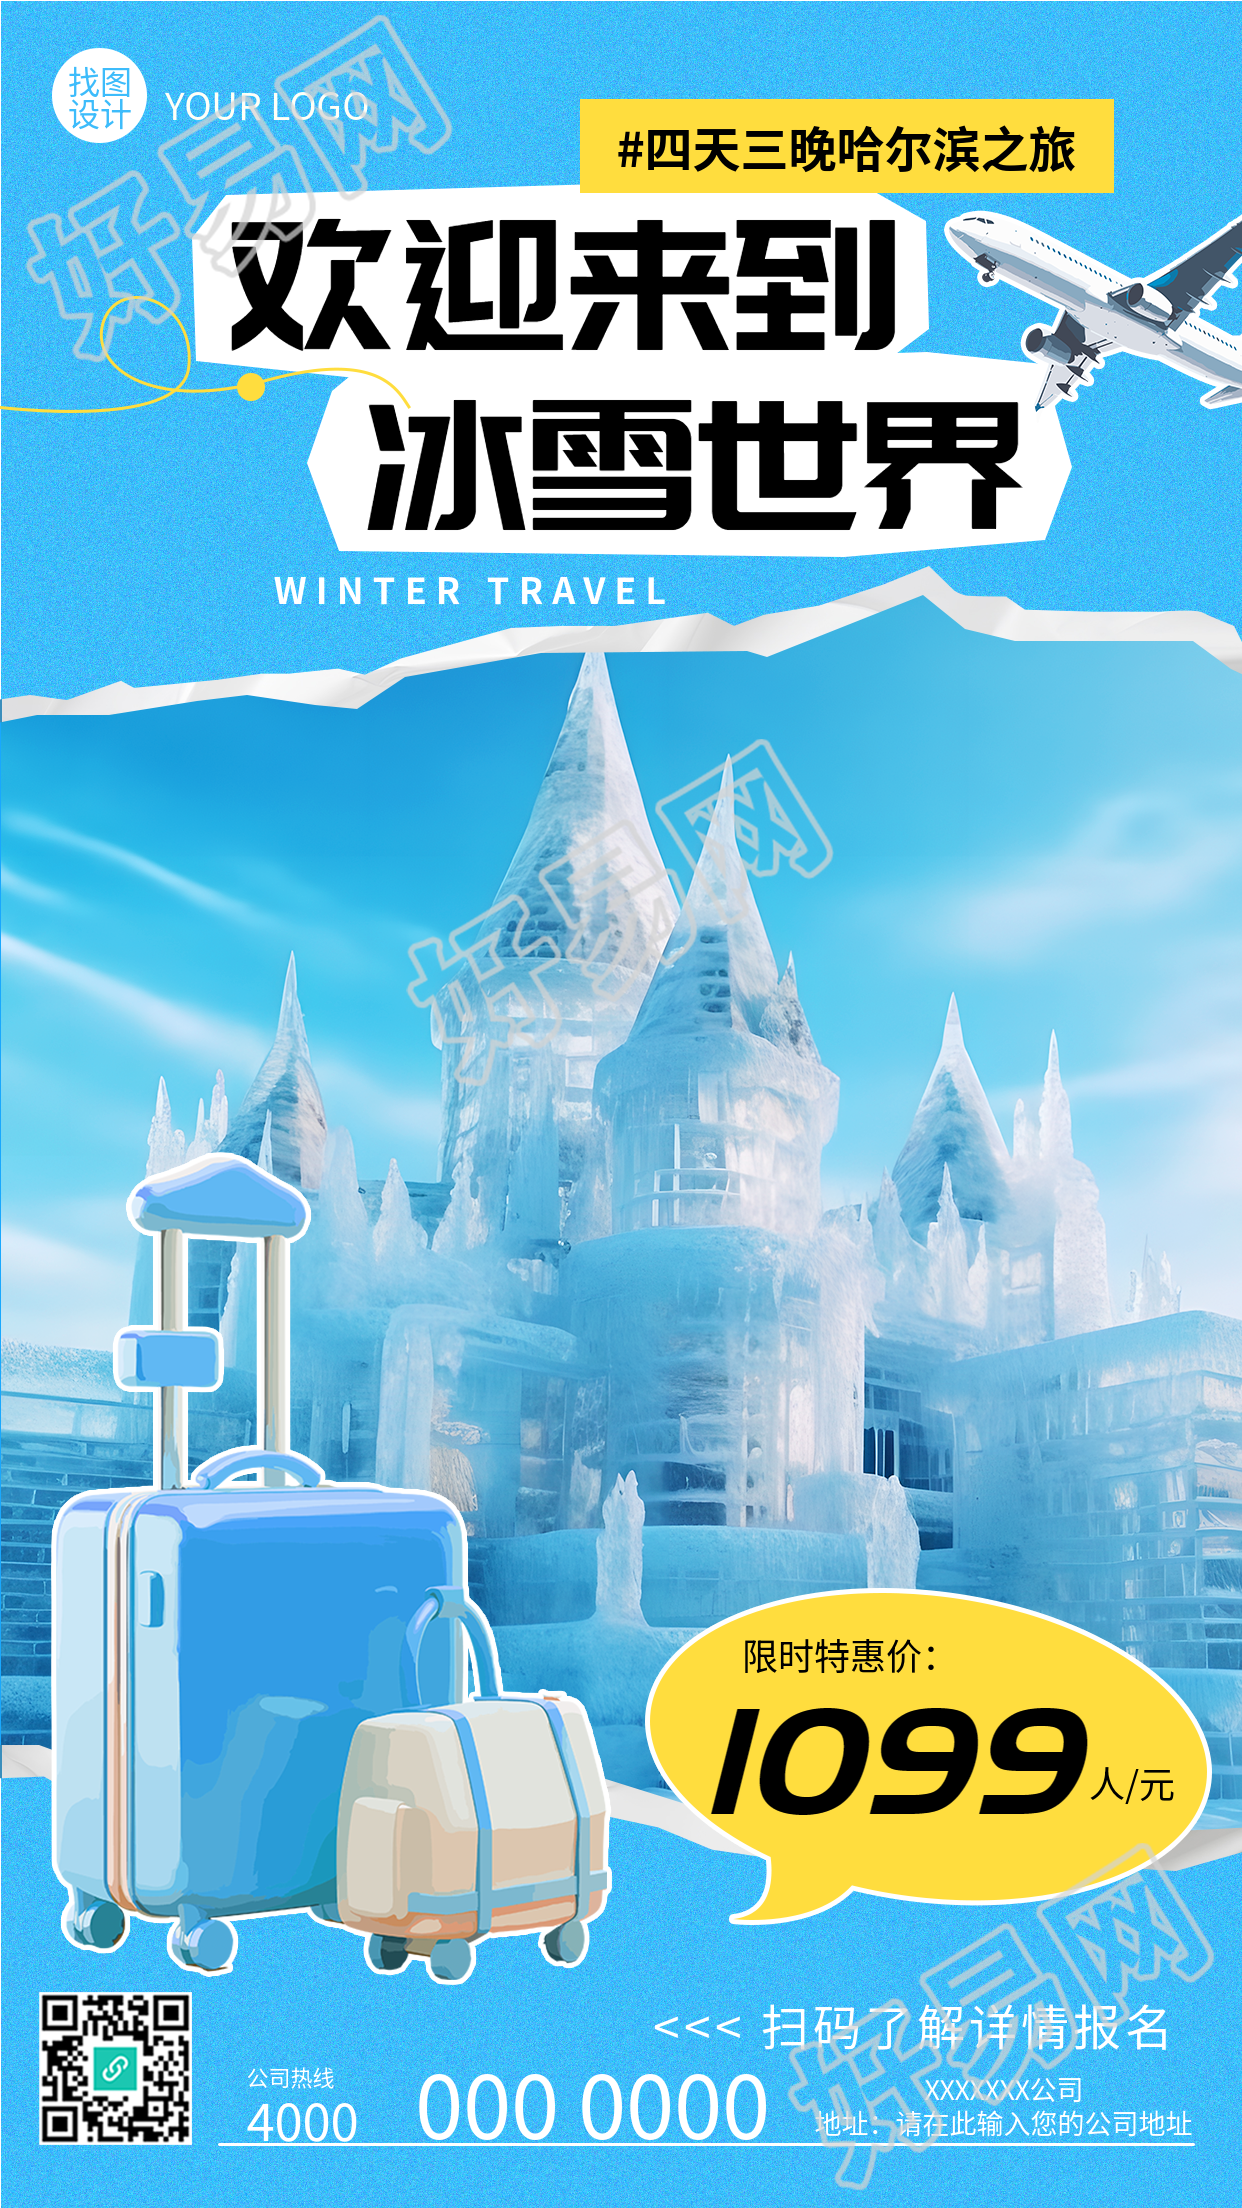 欢迎来到冰雪世界哈尔滨之旅开启啦手机海报